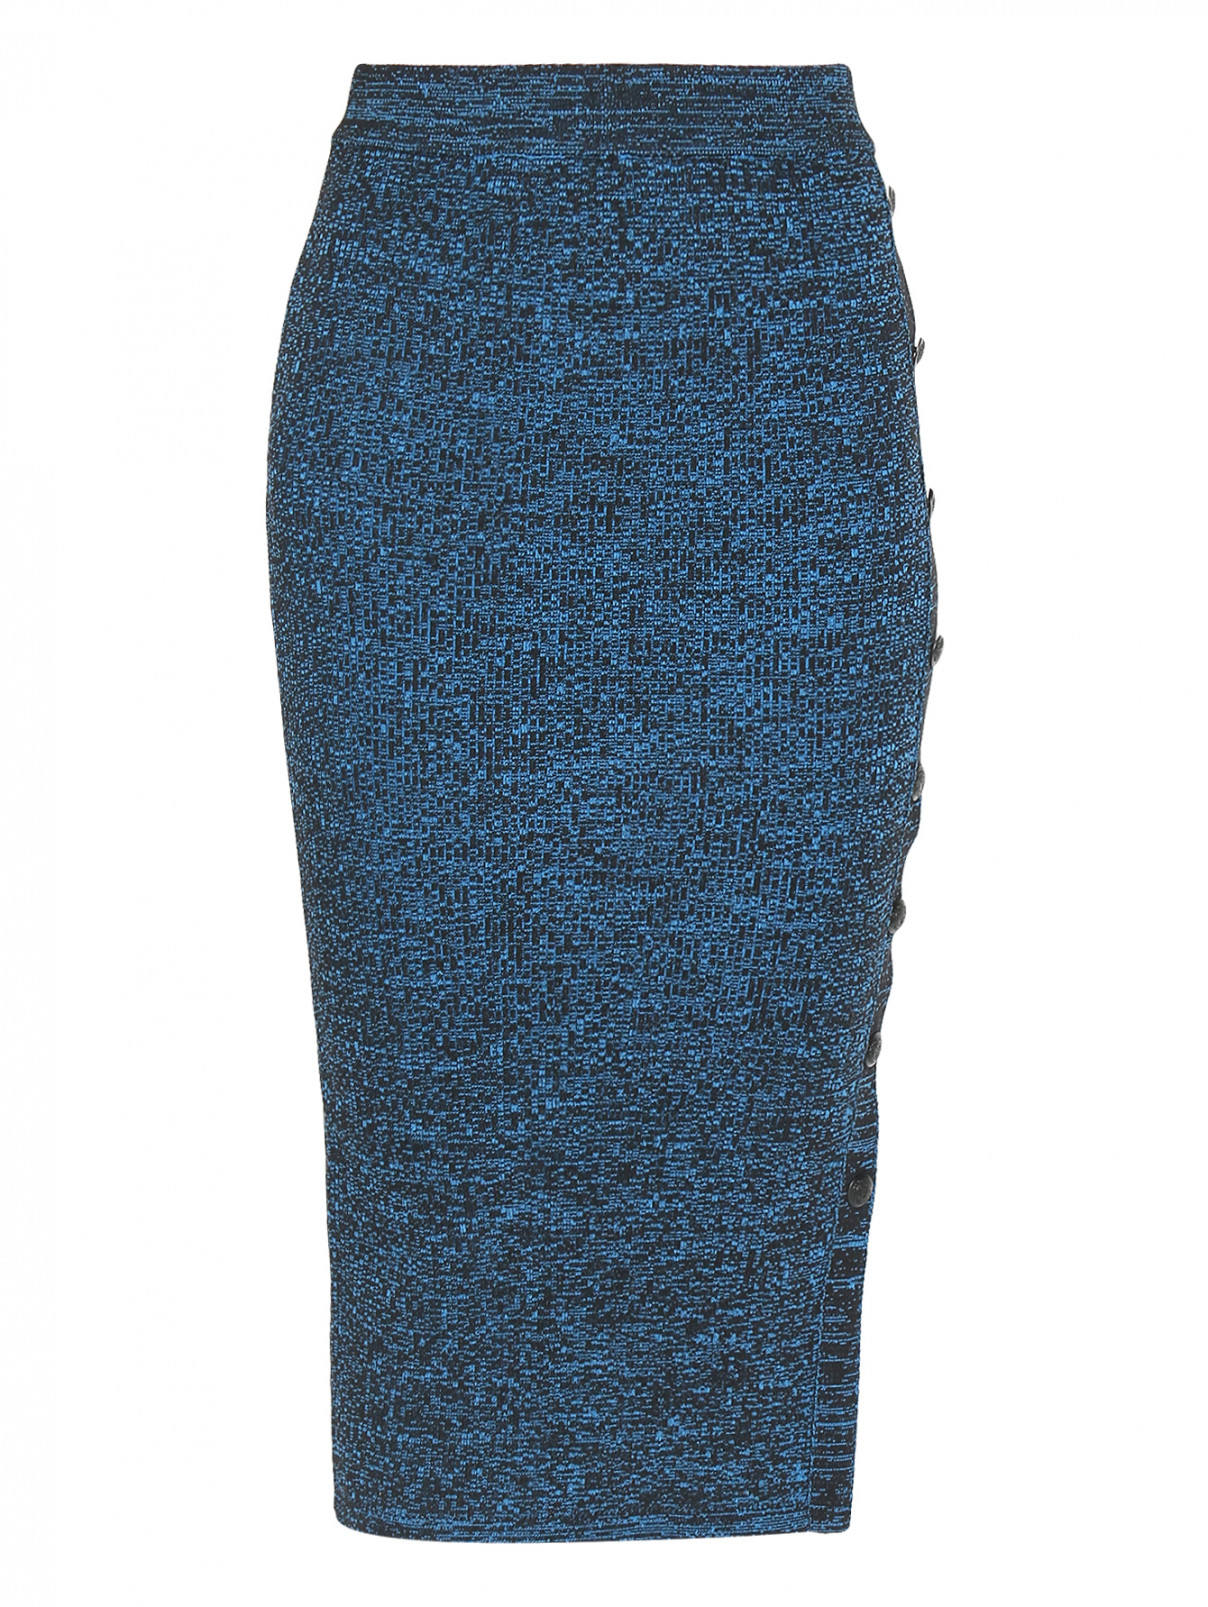 Трикотажная юбка с узором Essentiel Antwerp  –  Общий вид  – Цвет:  Узор